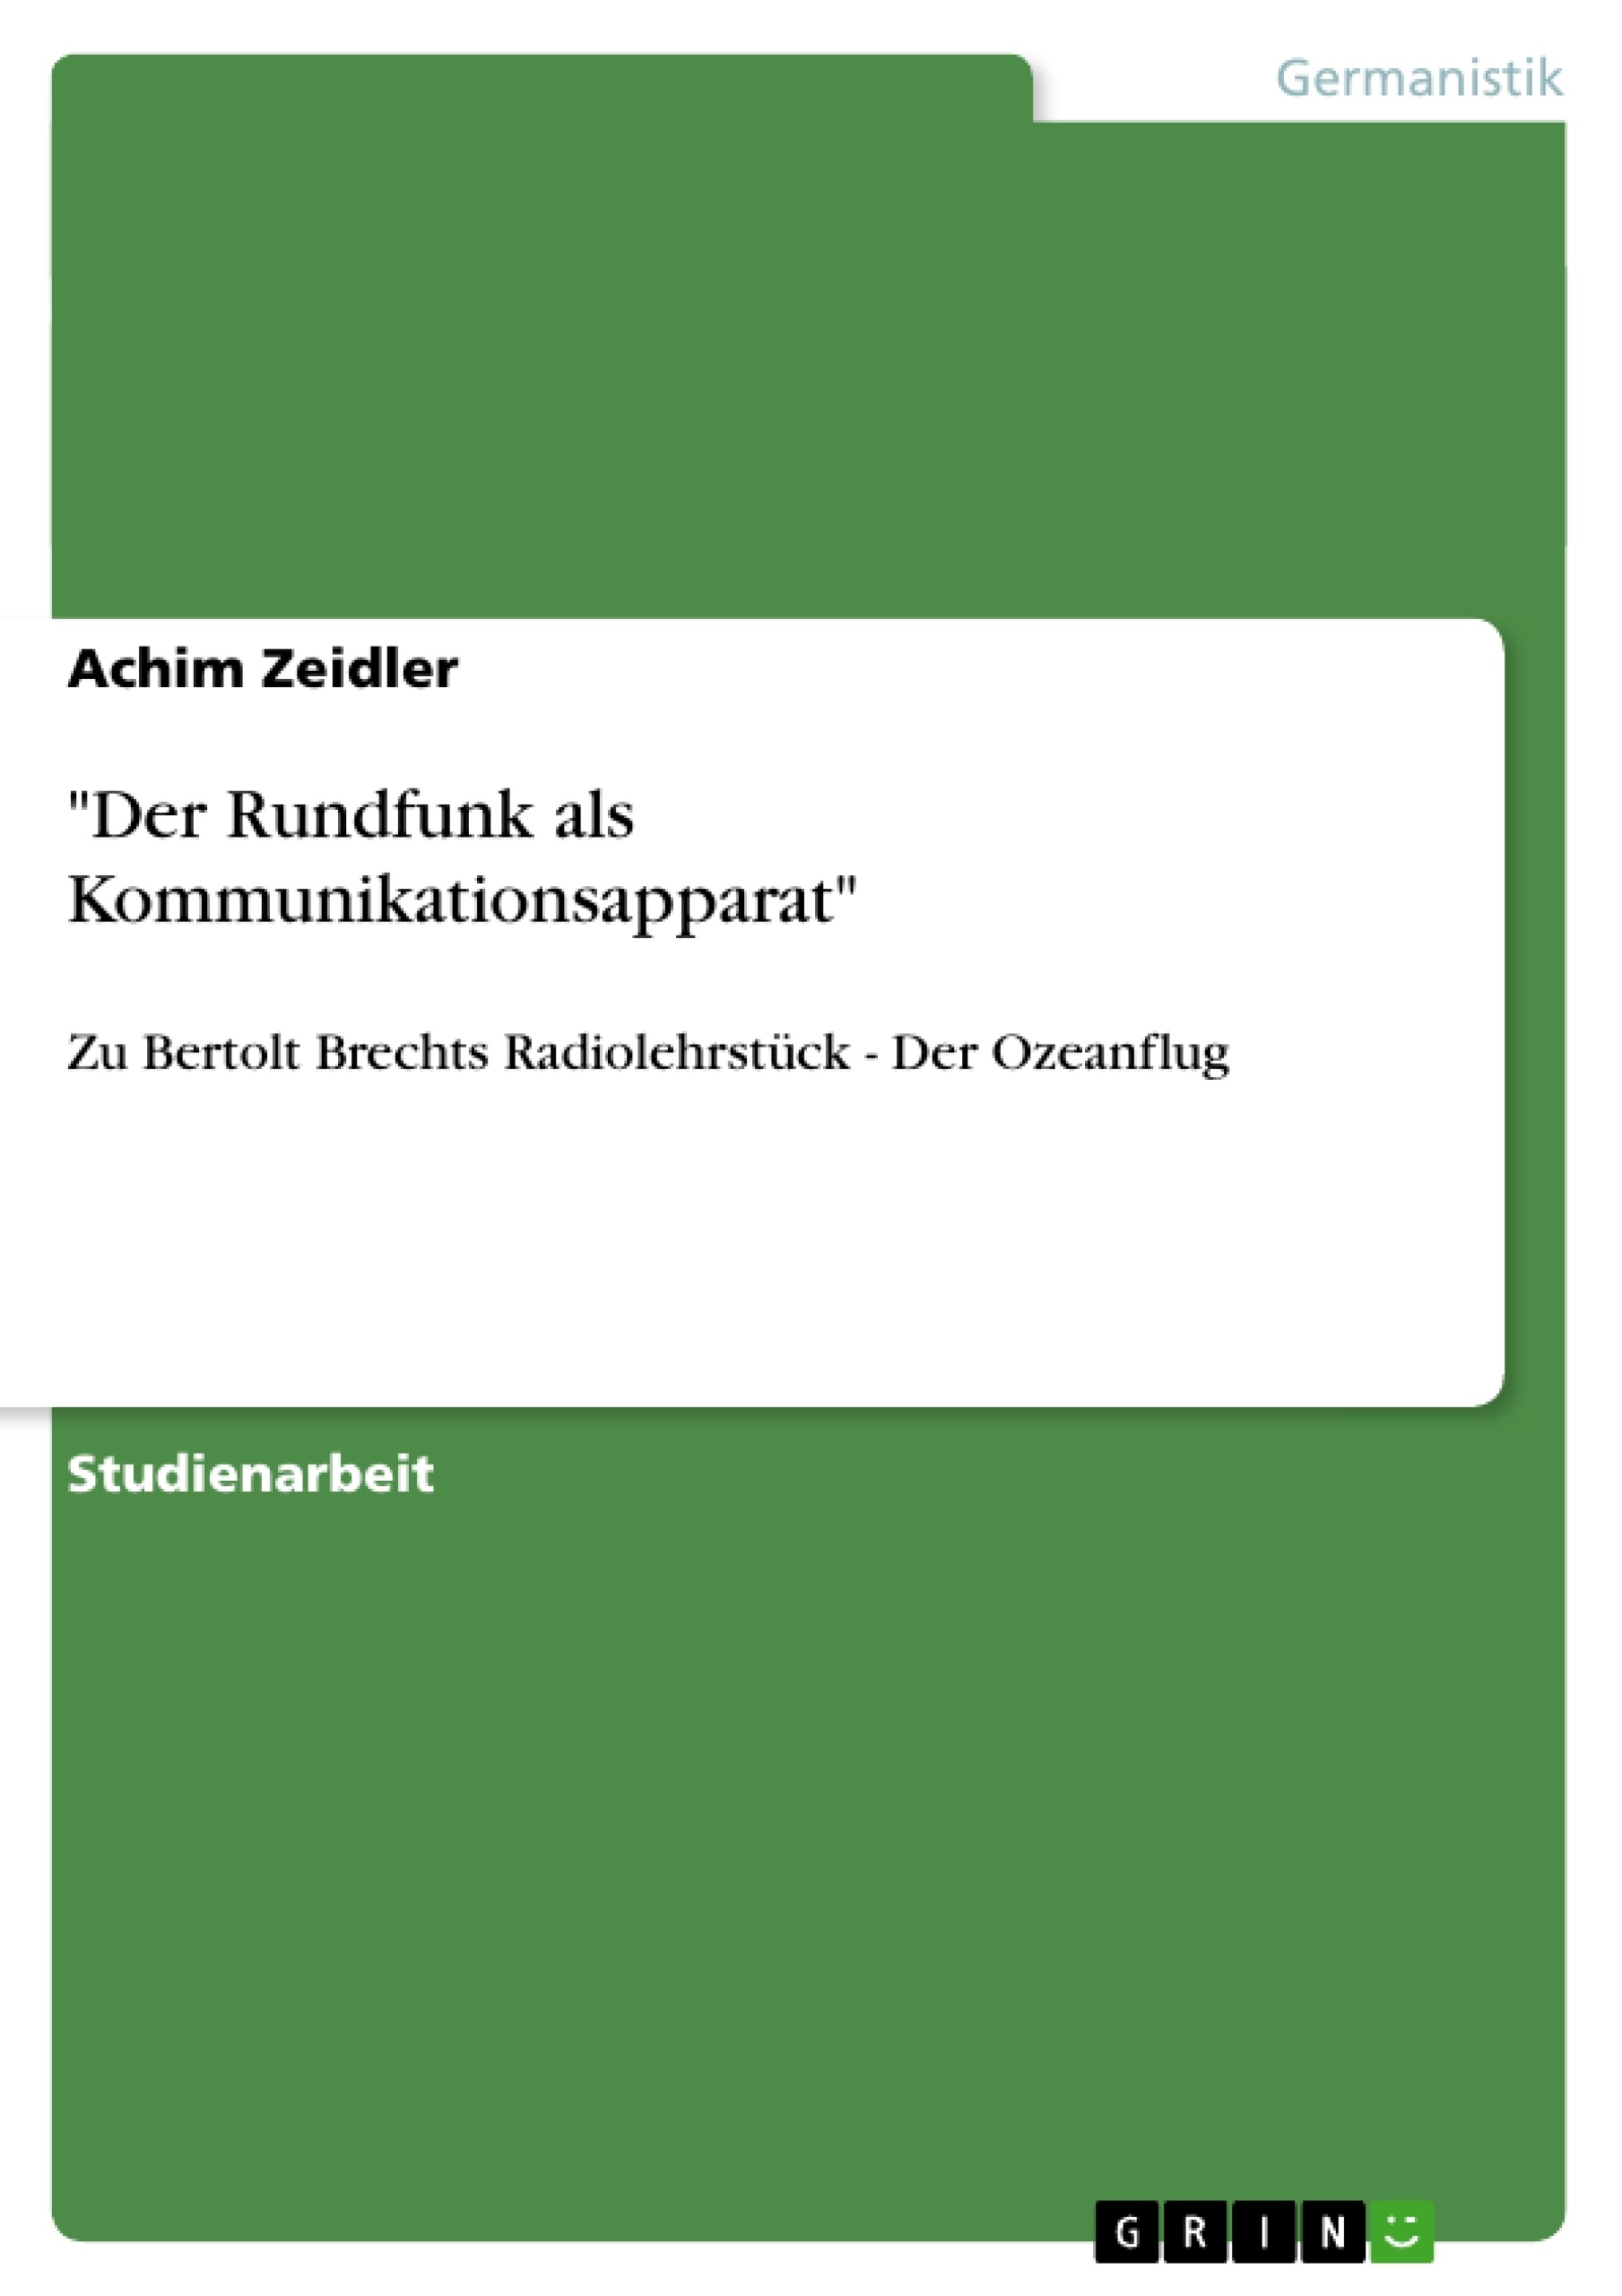 Título: "Der Rundfunk als Kommunikationsapparat"